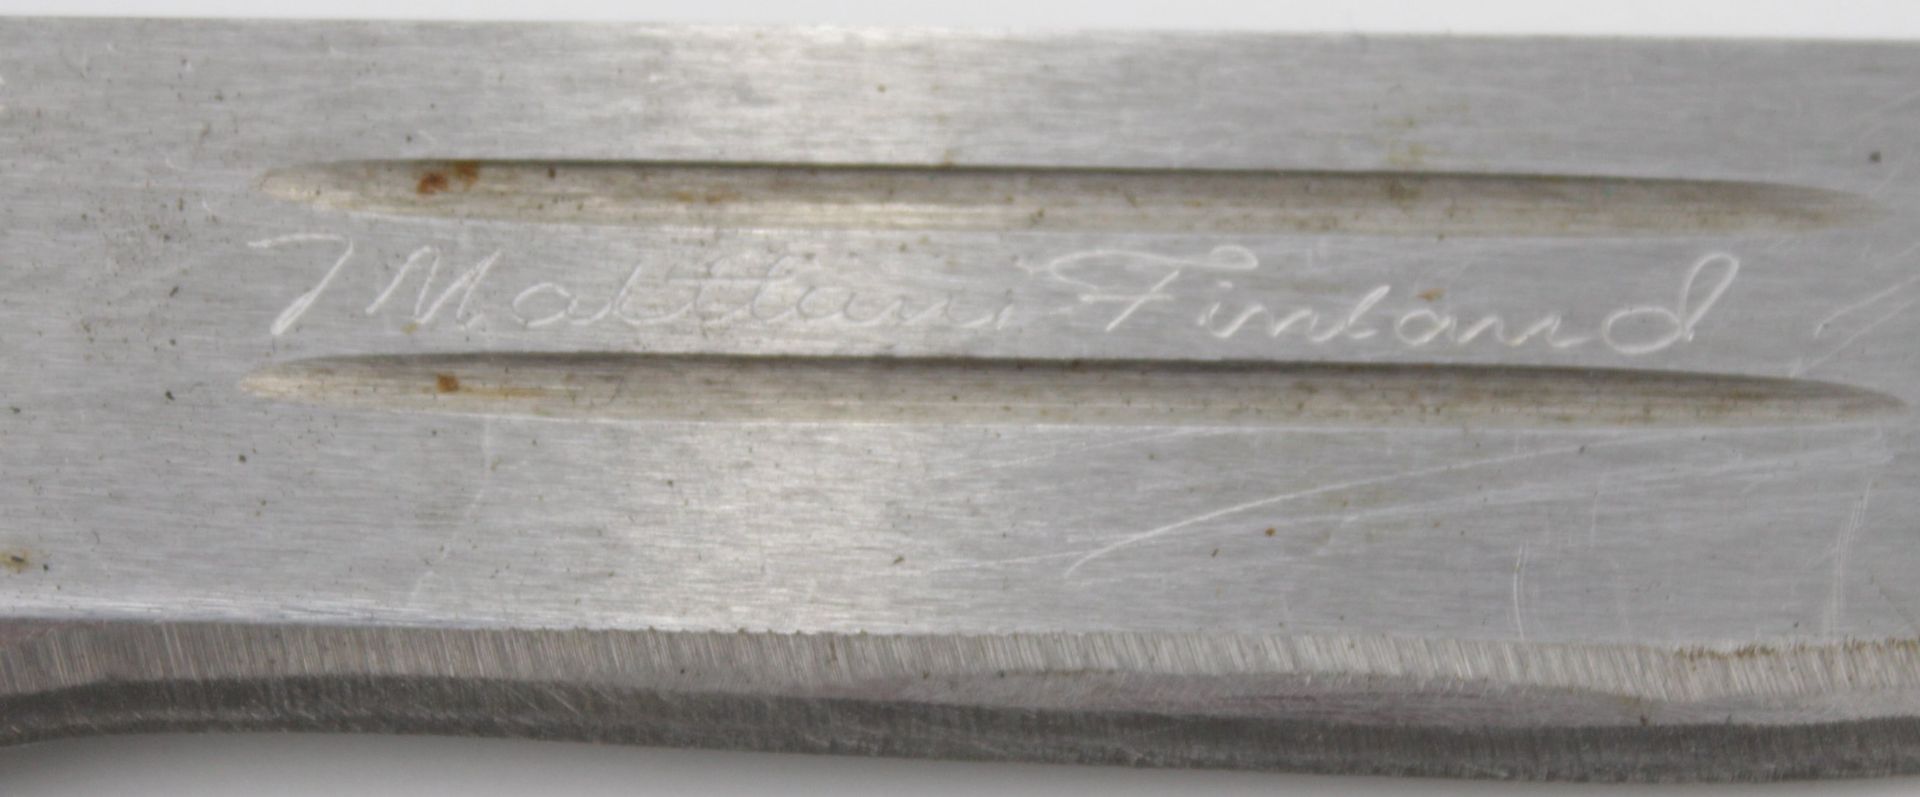 Finndolch, Klinge bez. "J. Marttini Finland", mit Lederscheide, Holzgriff, L-25cm. - Bild 3 aus 4